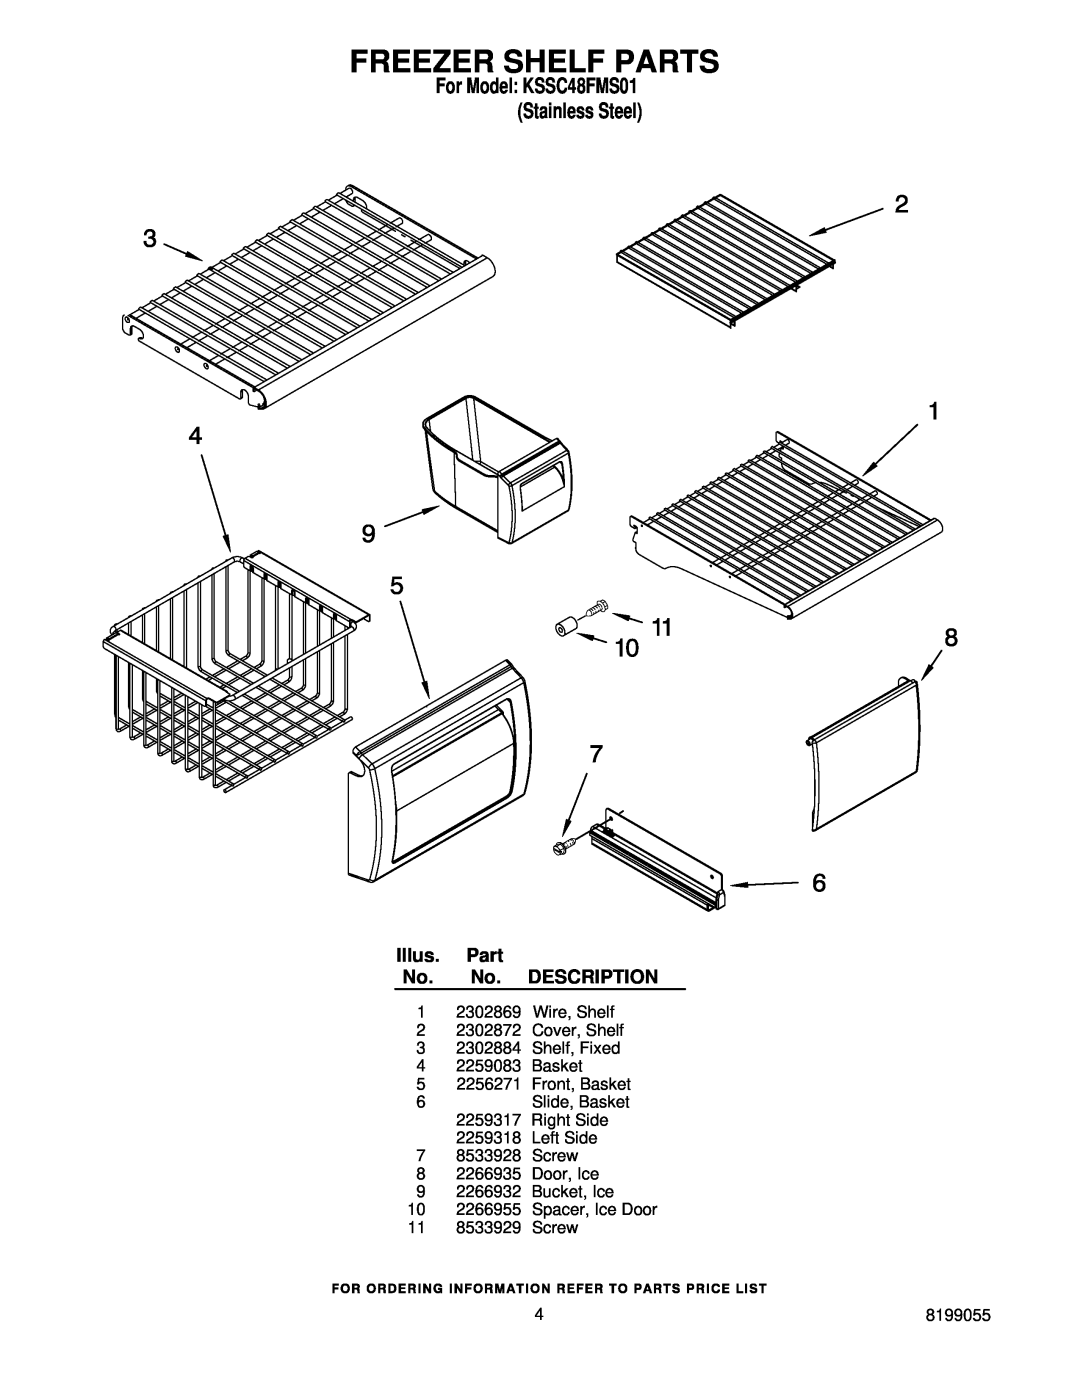 KitchenAid manual Freezer Shelf Parts, For Model KSSC48FMS01 Stainless Steel, Illus. Part No. No. DESCRIPTION 